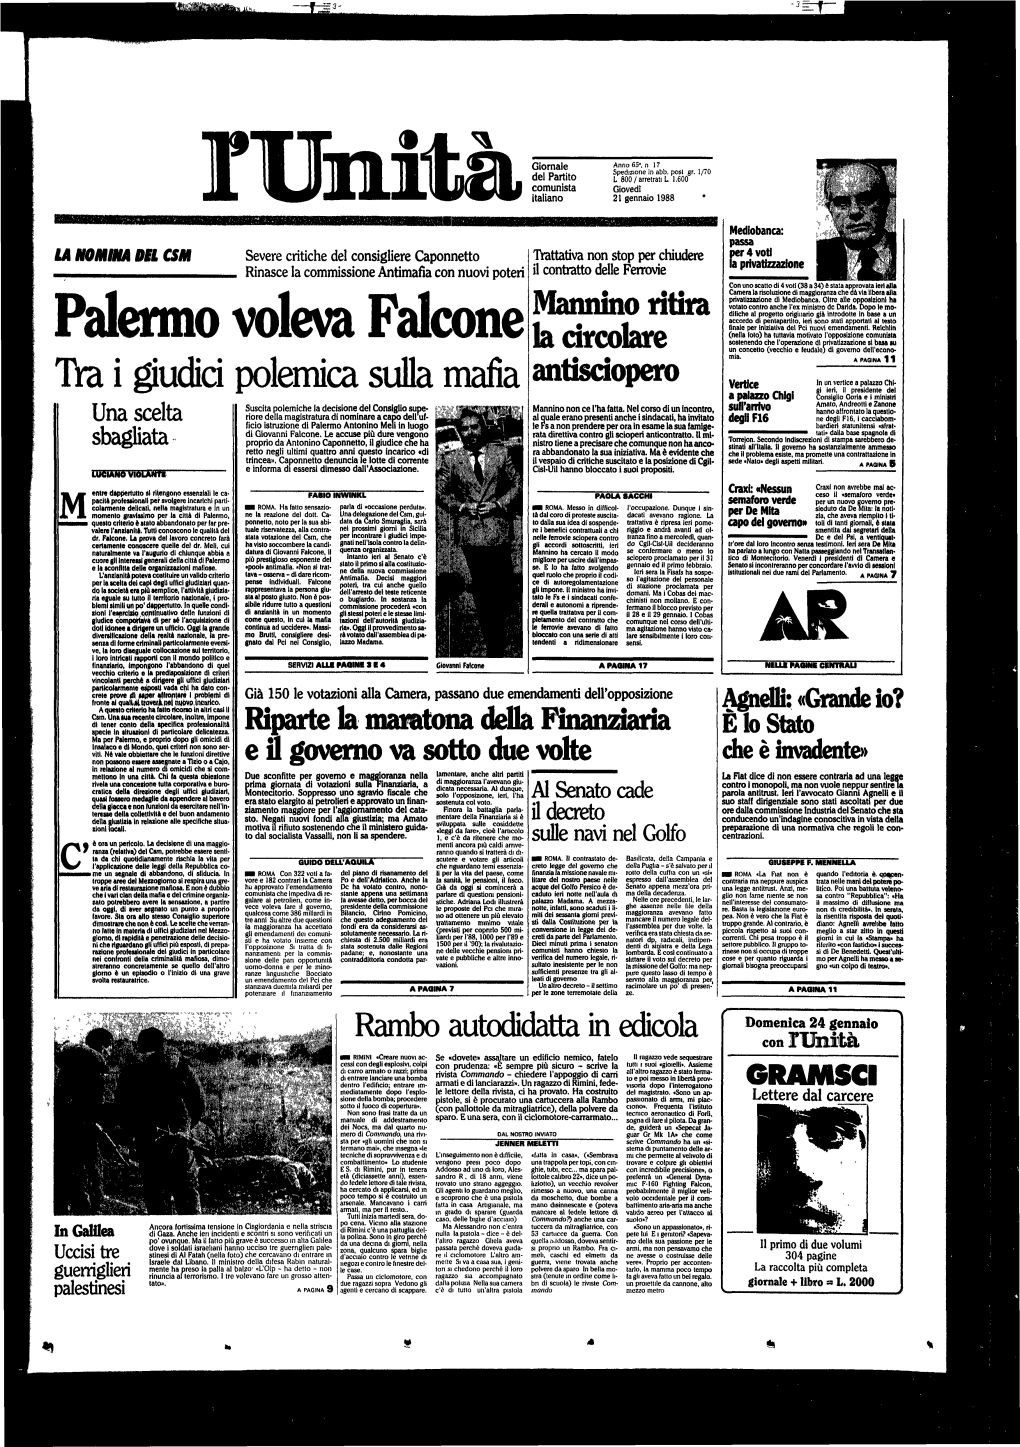 Palermo Voleva Falcone Sostenendo Che L'operazione Di Privatizzazione Si Basa Tu La Circolare Un Concetto (Vecchio E Feudale) Di Governo Dell'econo- Mia' a PAGINA 11